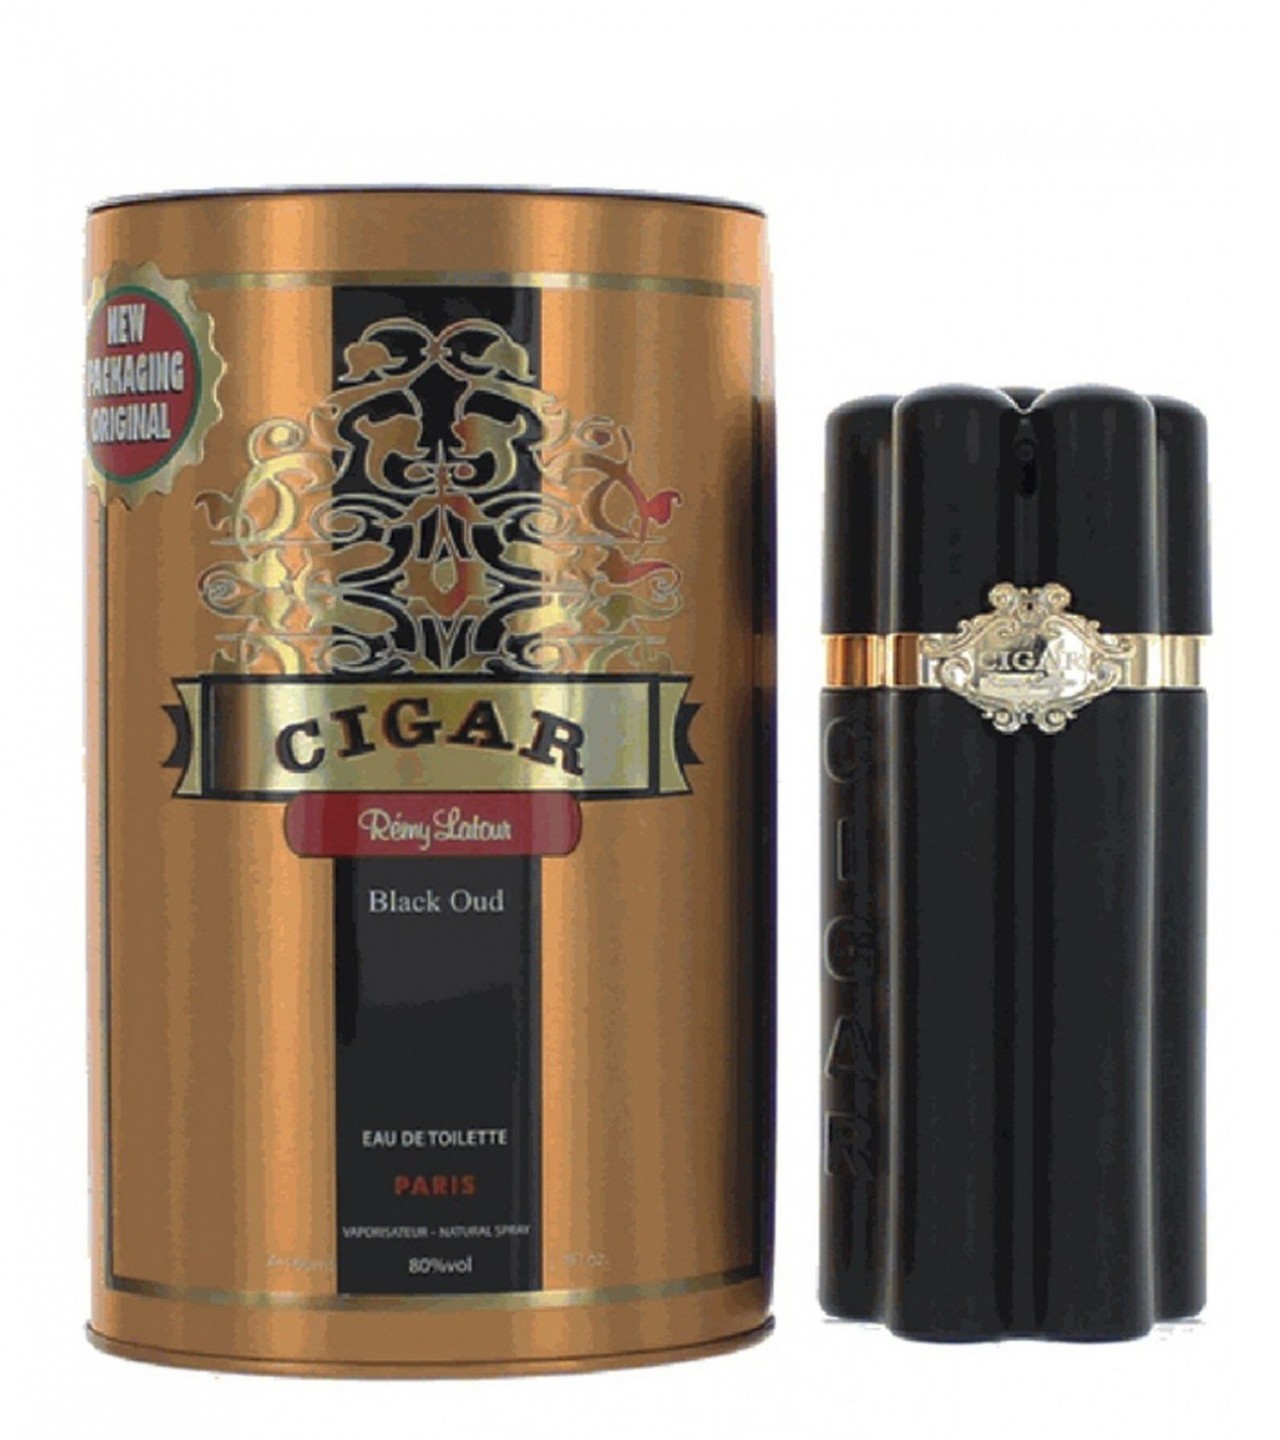 Remy Latour Cigar Black Oud Perfume For Men Eau De Toilette Spray, 3.3 Ounces - 100 ml